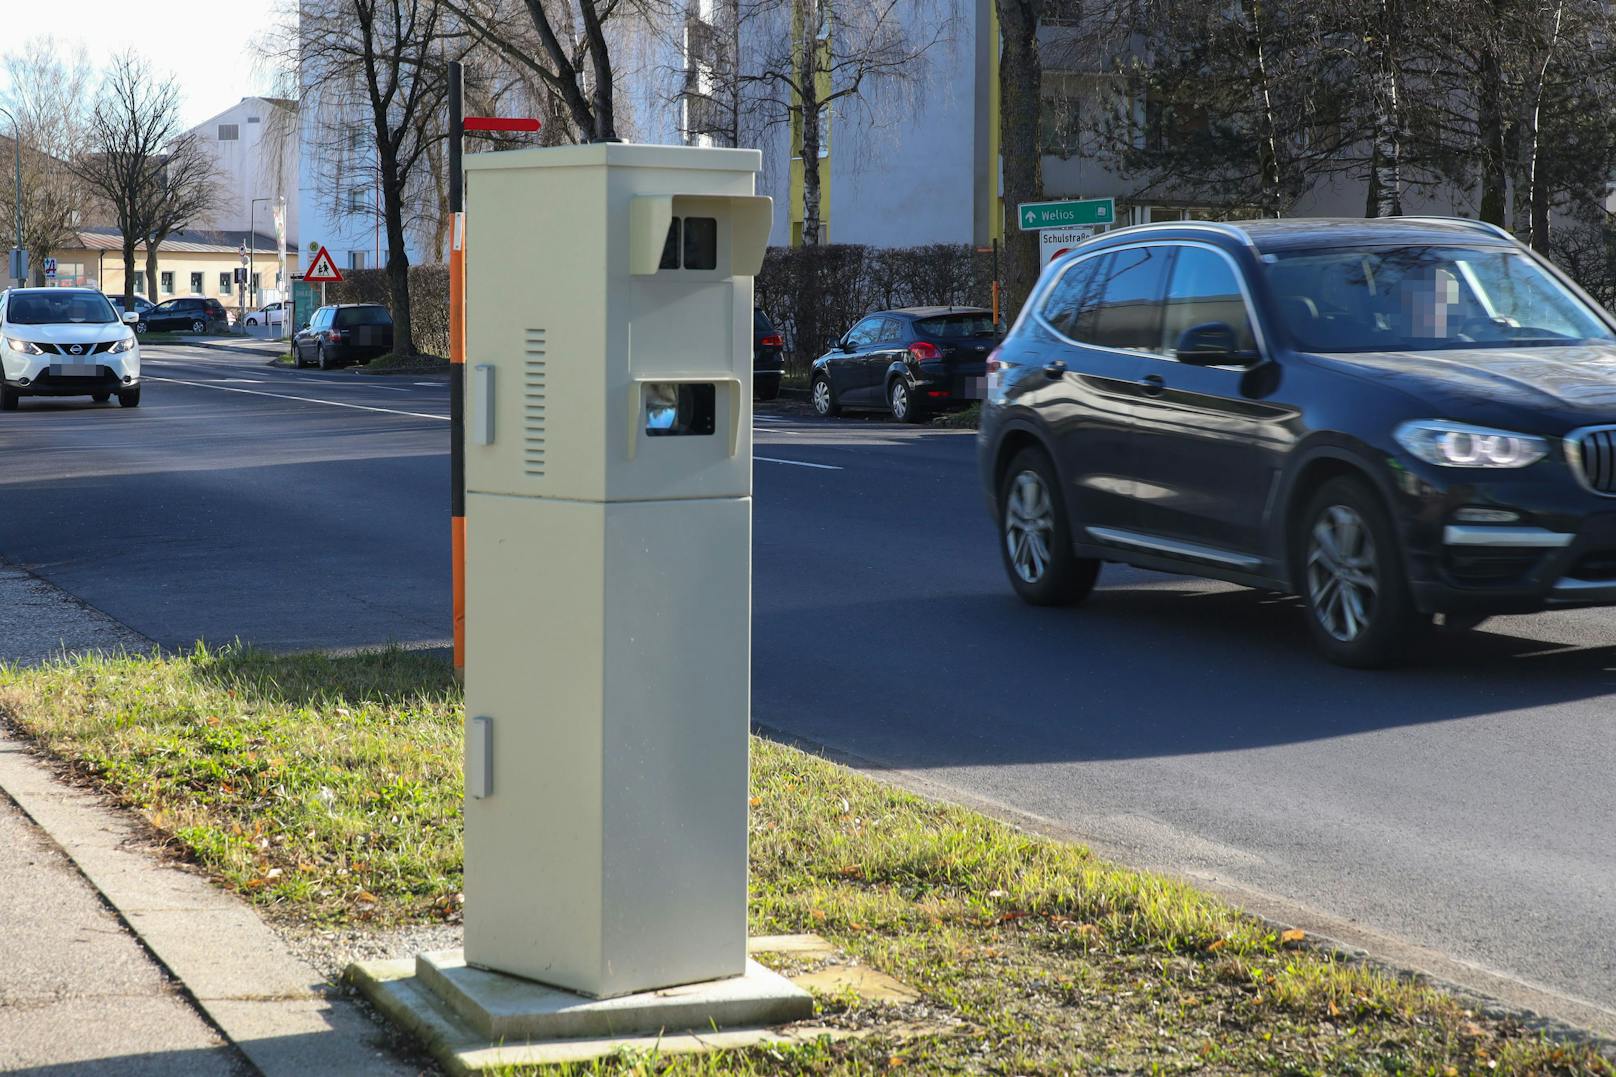 Leistet zuverlässige Dienste: der Radarkasten an der Salzburger Straße in Wels.